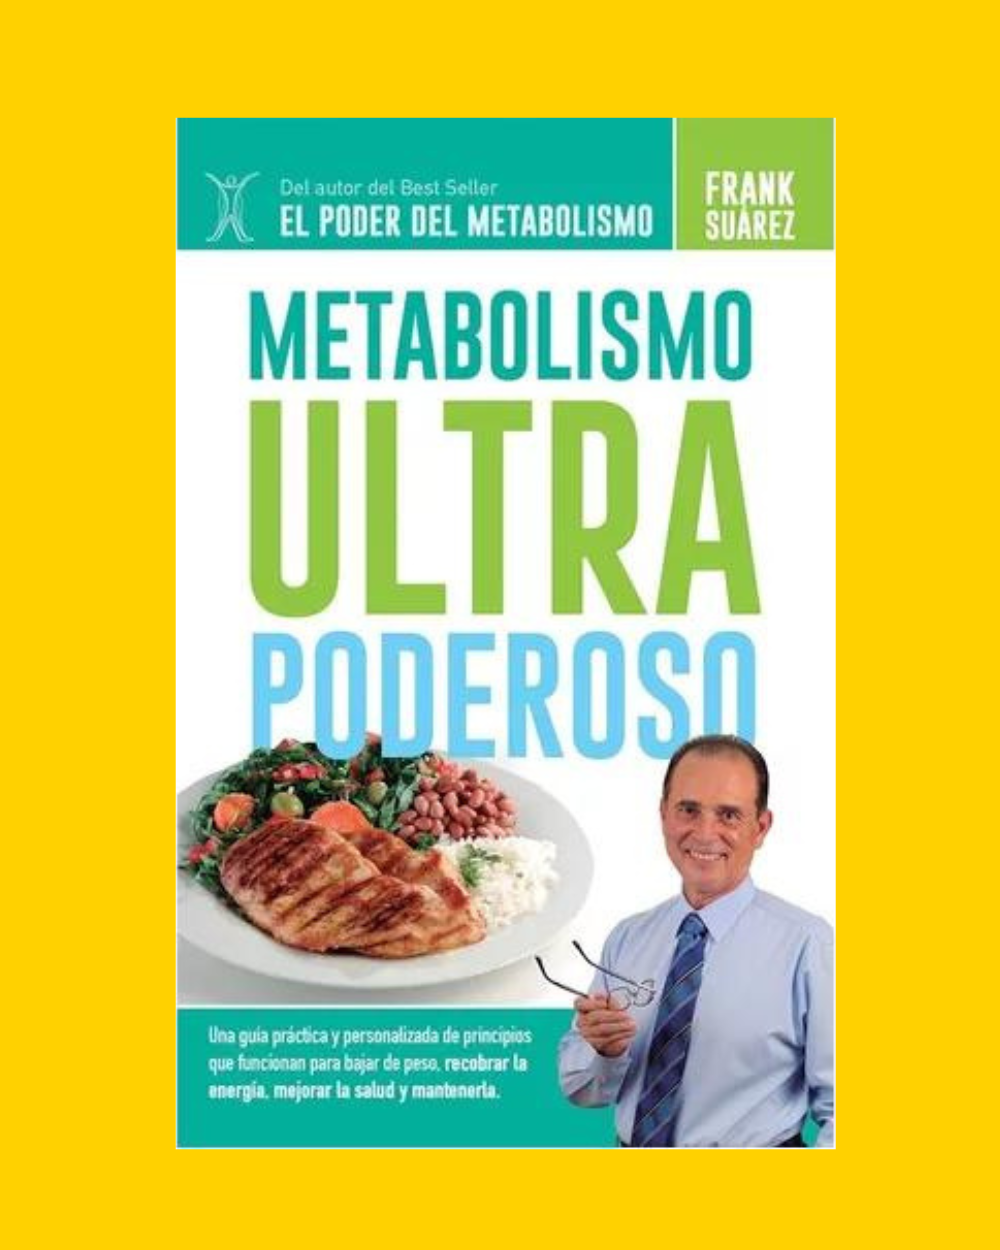 PENGUIN Libro Metabolismo Ultra Poderoso - Frank Suárez